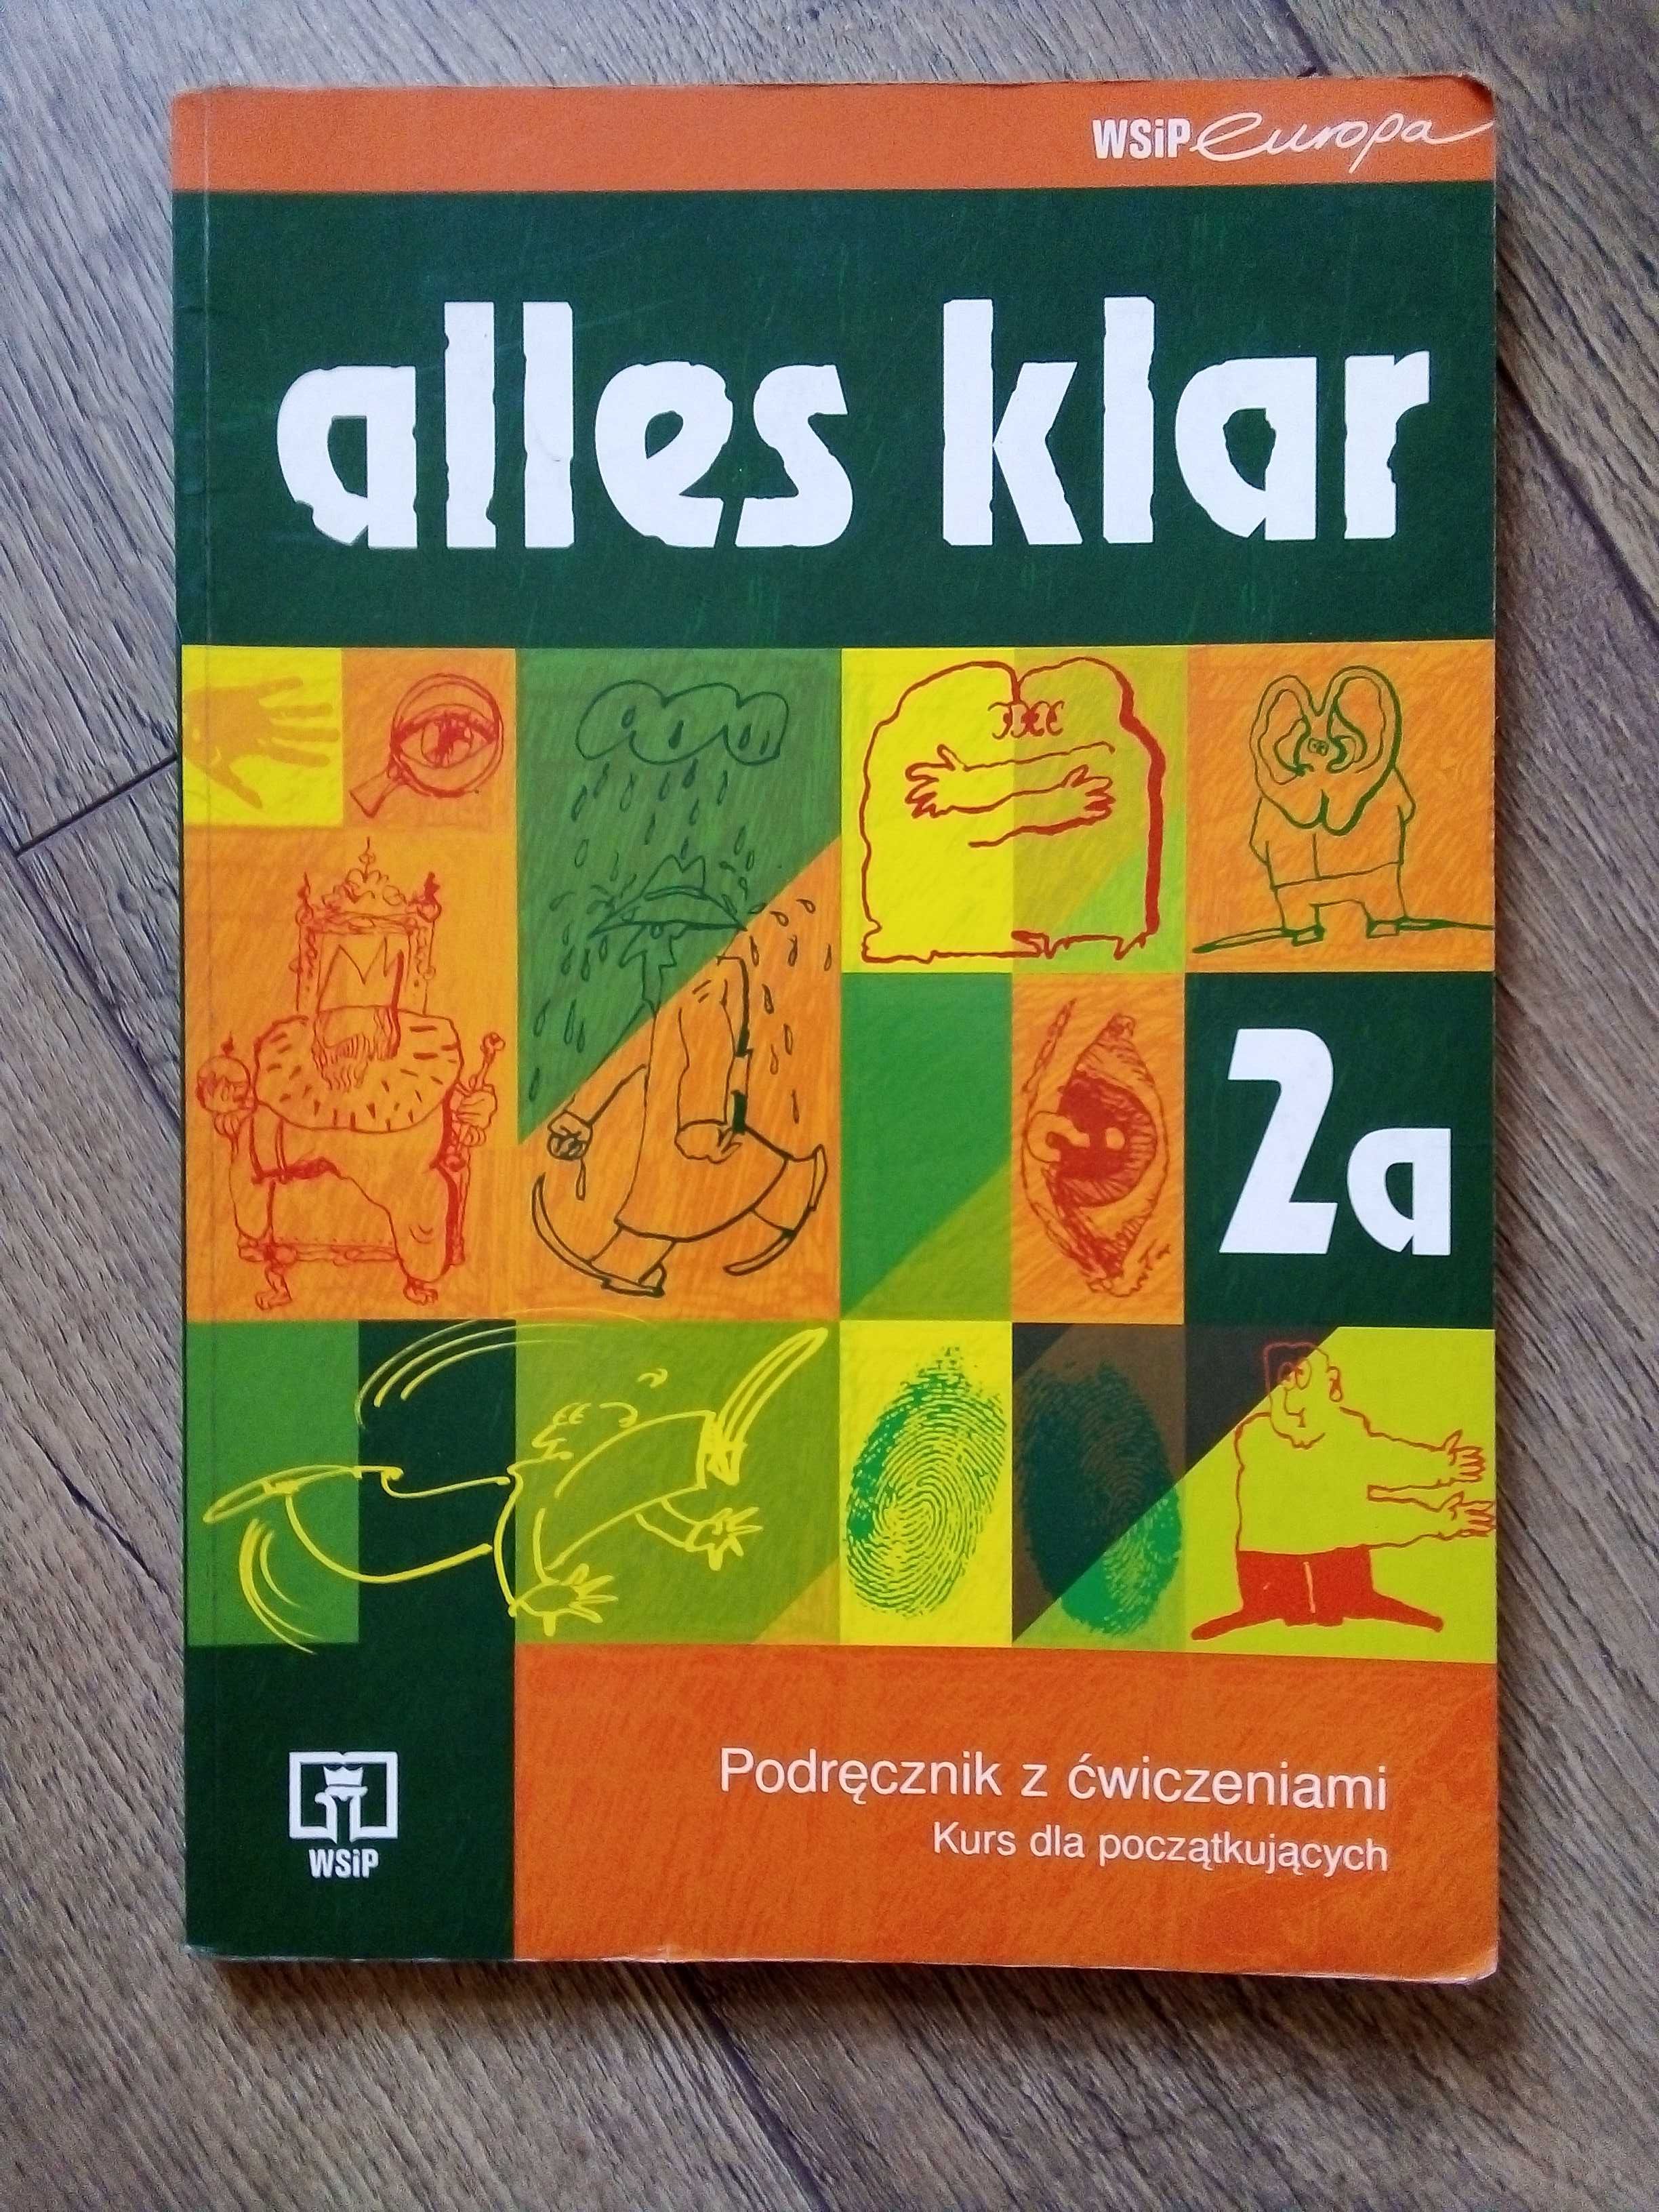 Podręcznik z ćwiczeniami do j. niemieckiego - alles klar 2a